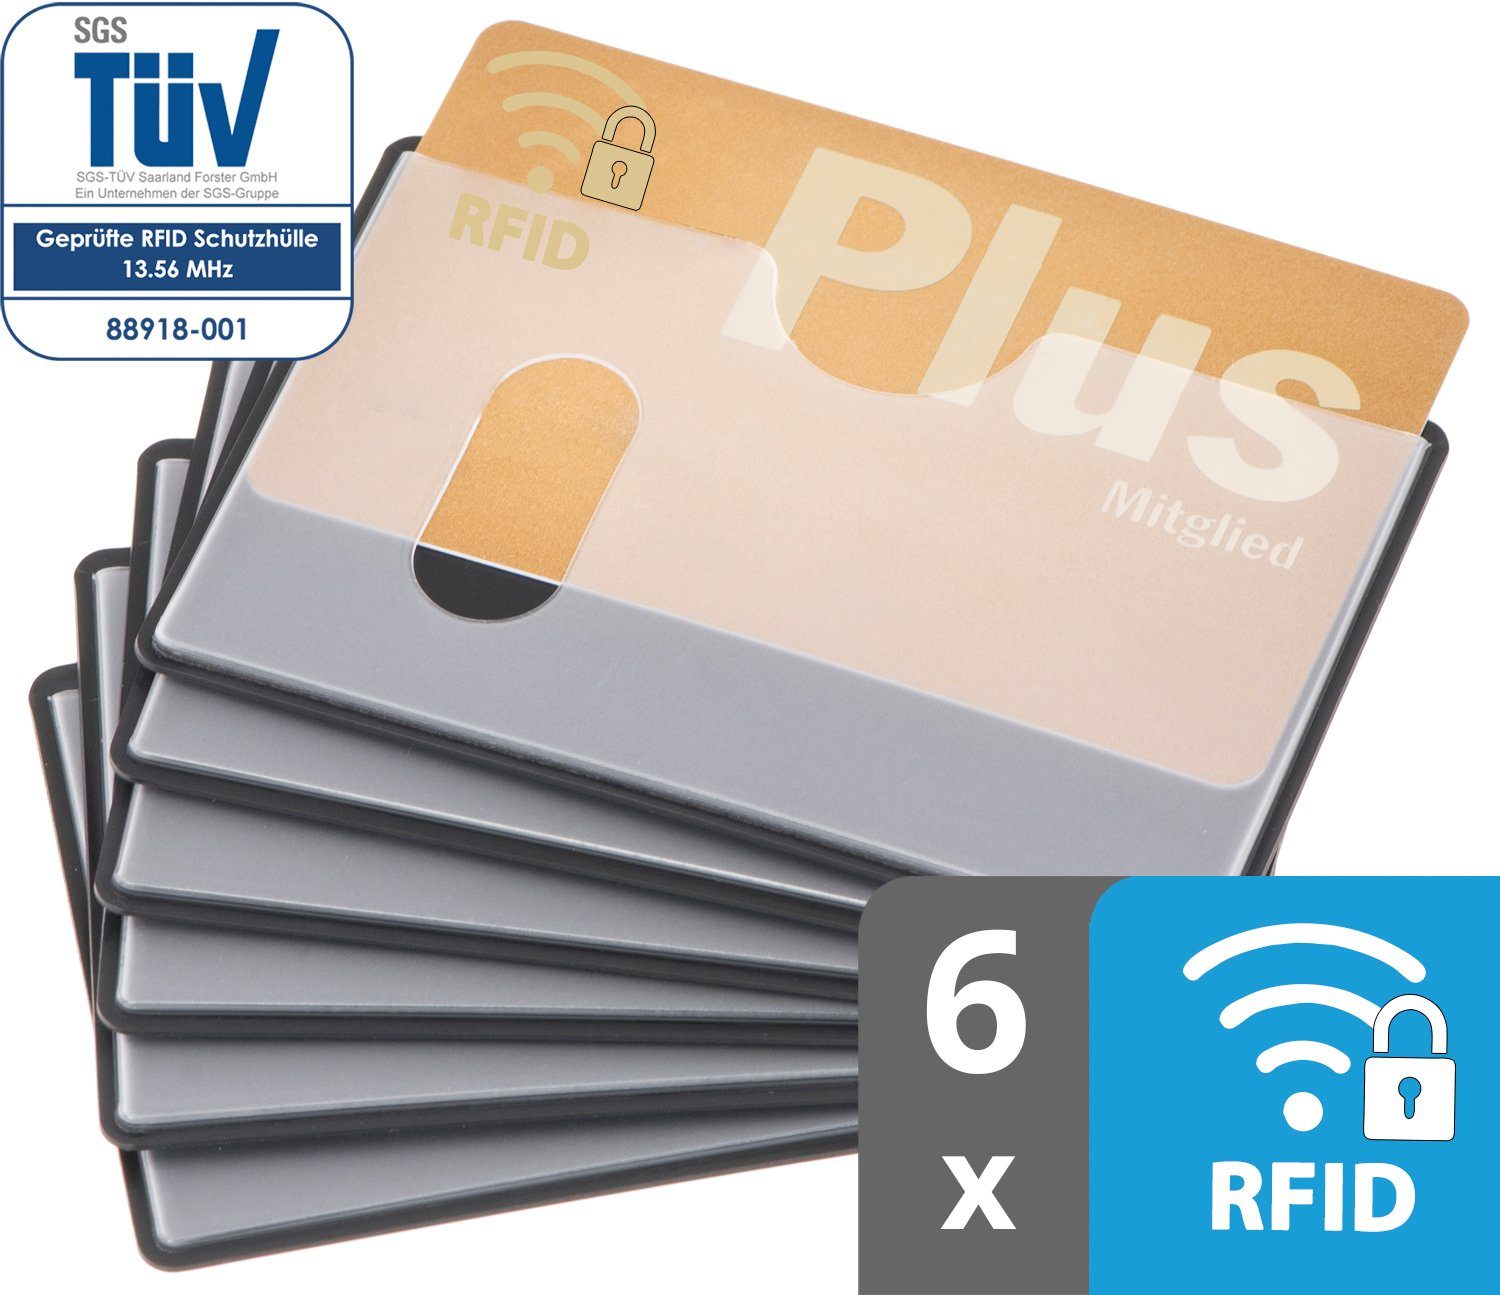 mm, Stück valonic Schutz, x RFID oben 91 59 Kreditkartenhüllen Kreditkarte, Scheckkarte transparent, Etui abgeschirmt, - NFZ 6 Einschub RFID-Block valonic